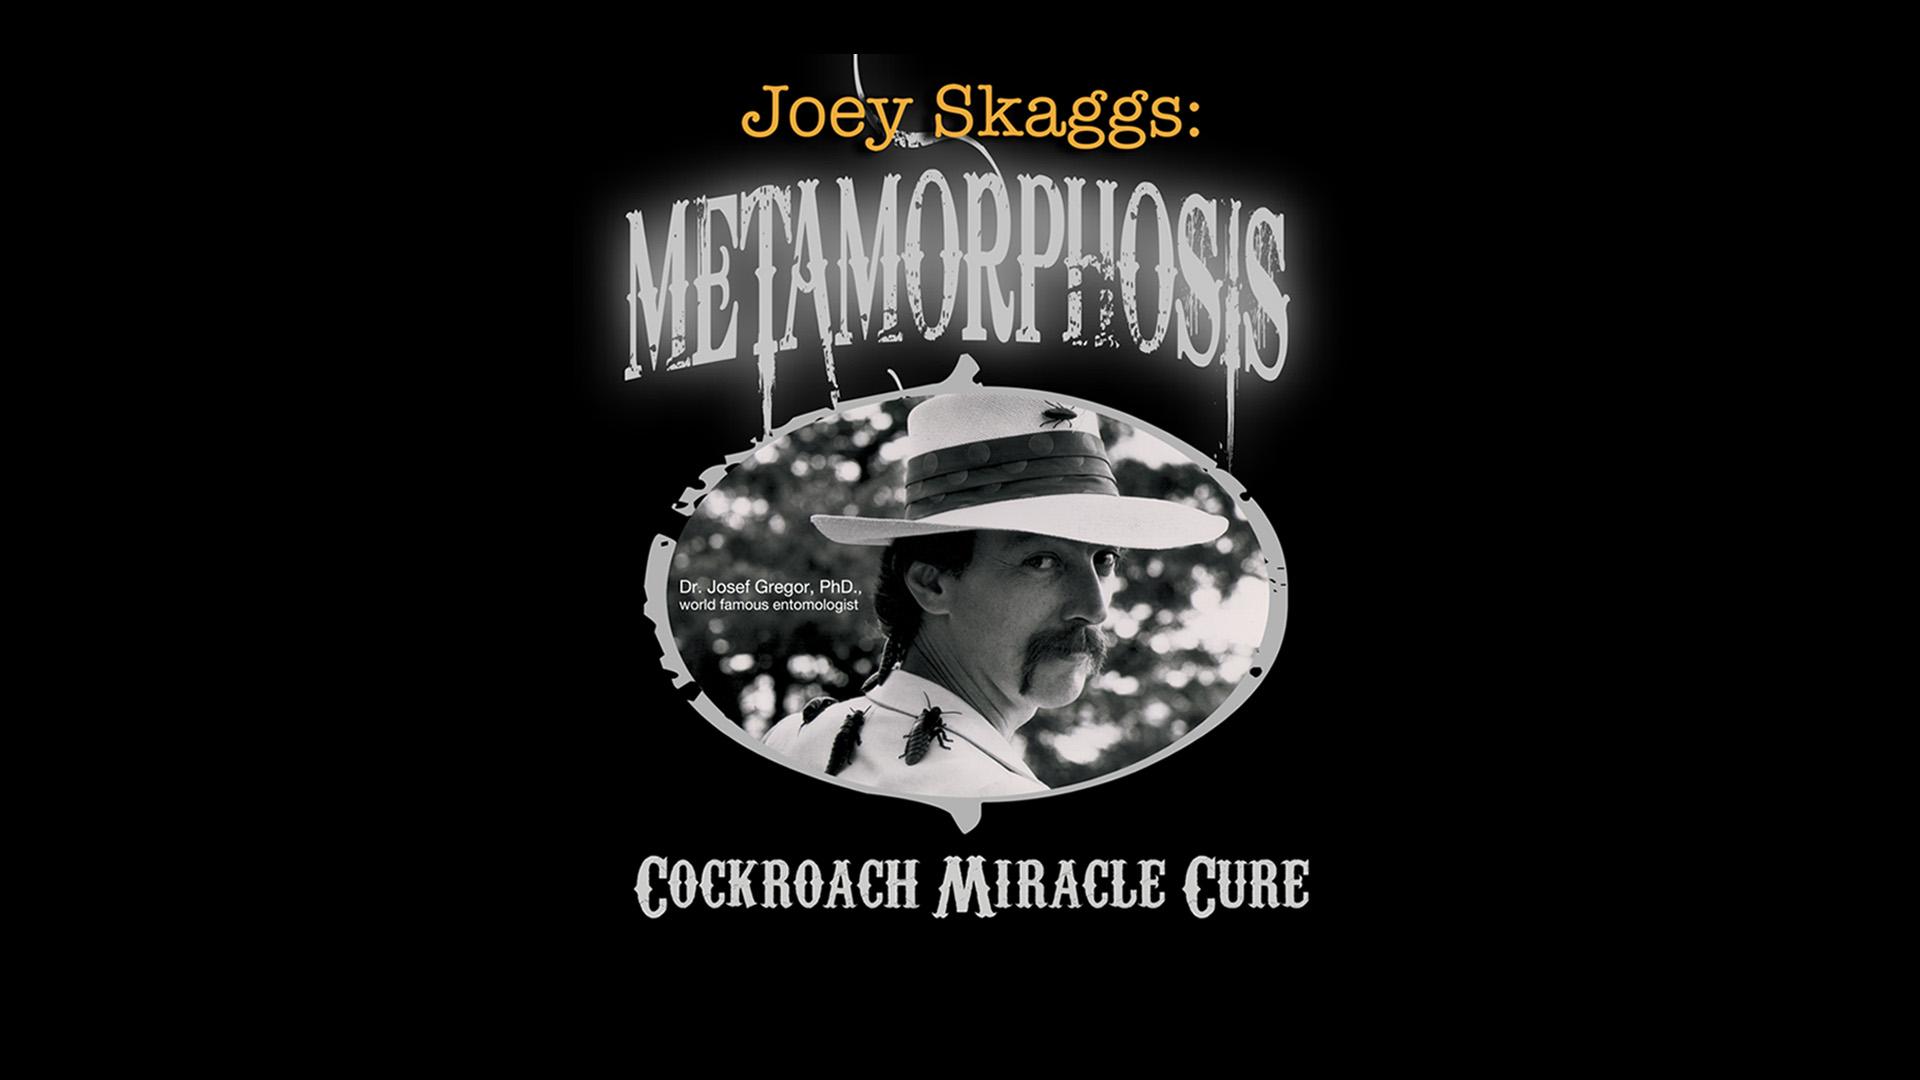 Joey Skaggs: Metamorphosis, Cockroach Miracle Cure